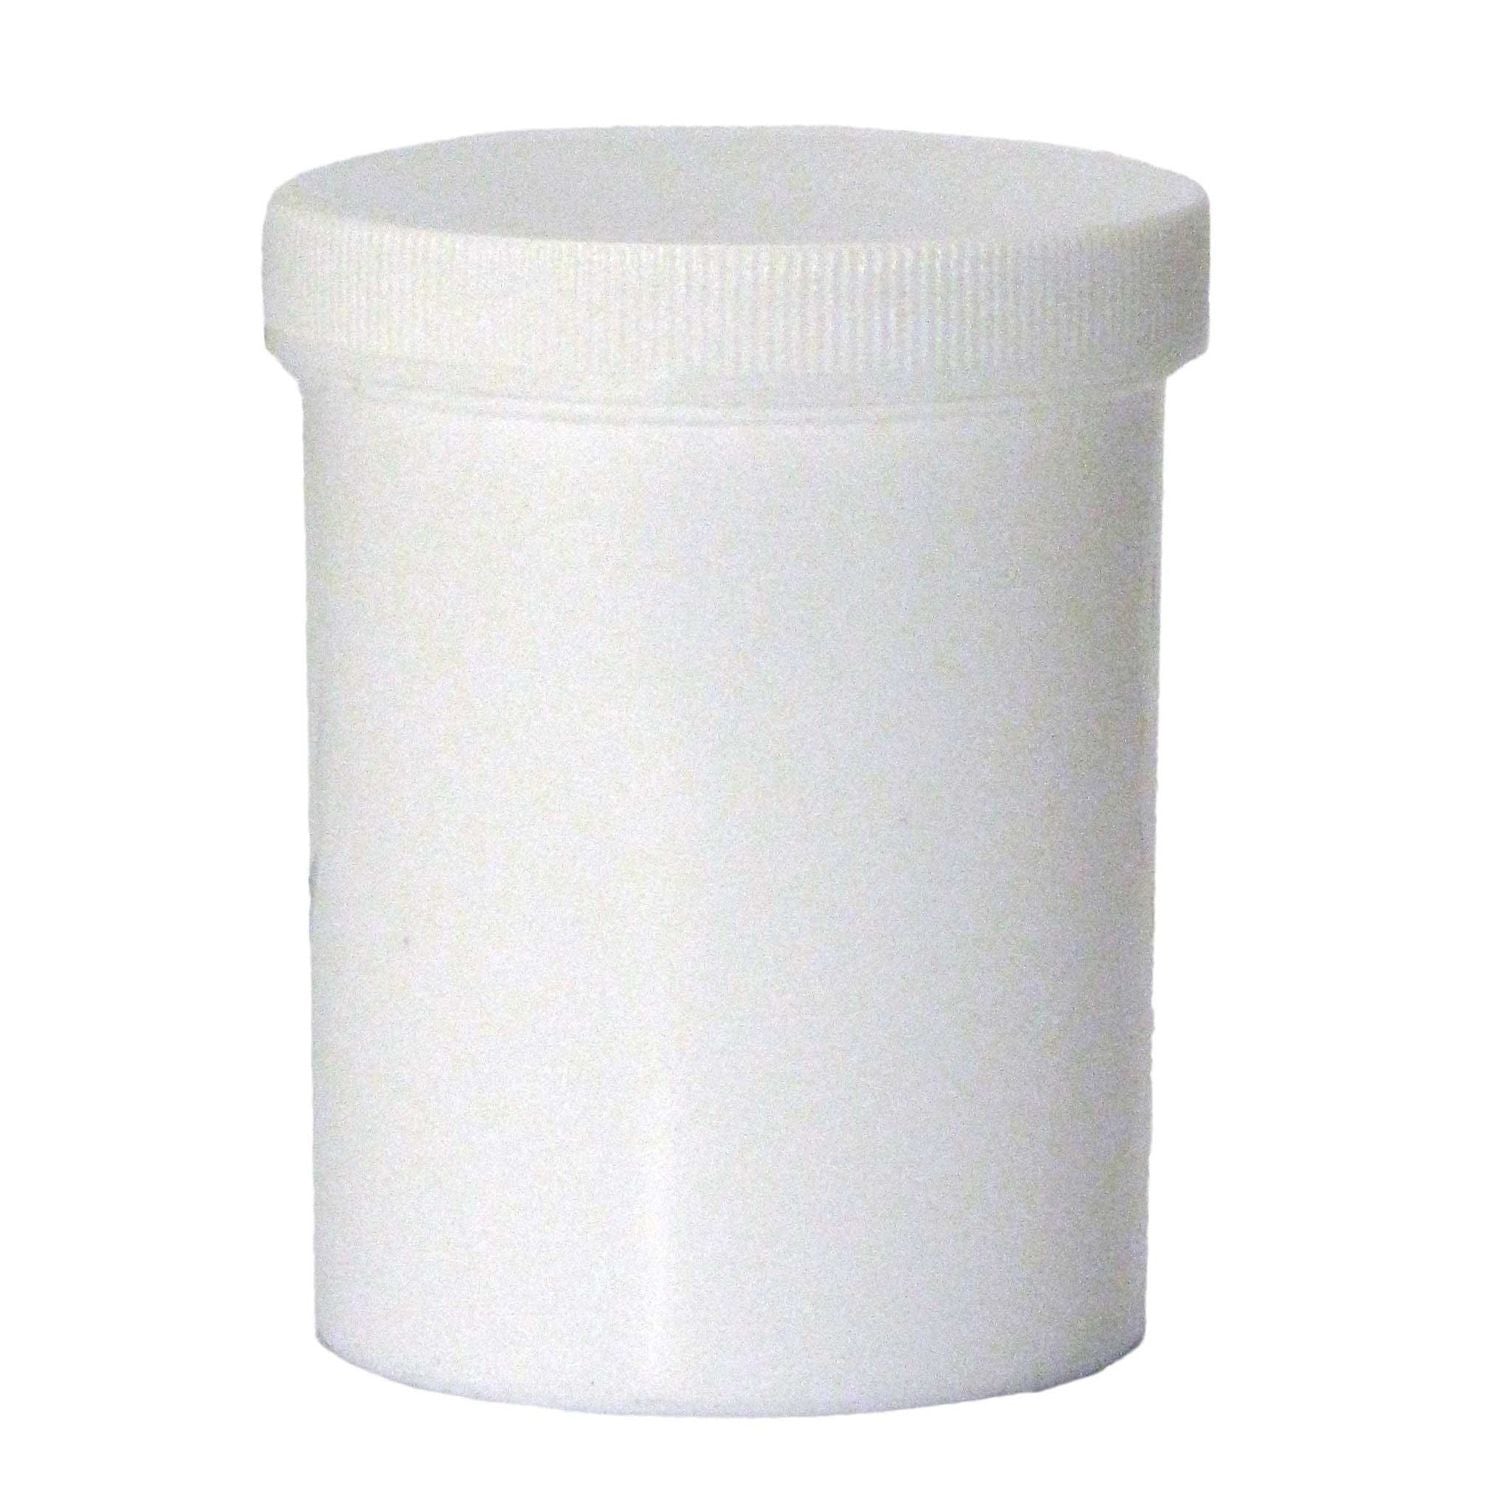 Alvita Plastic Jar & Cap | 200g | Pack of 6